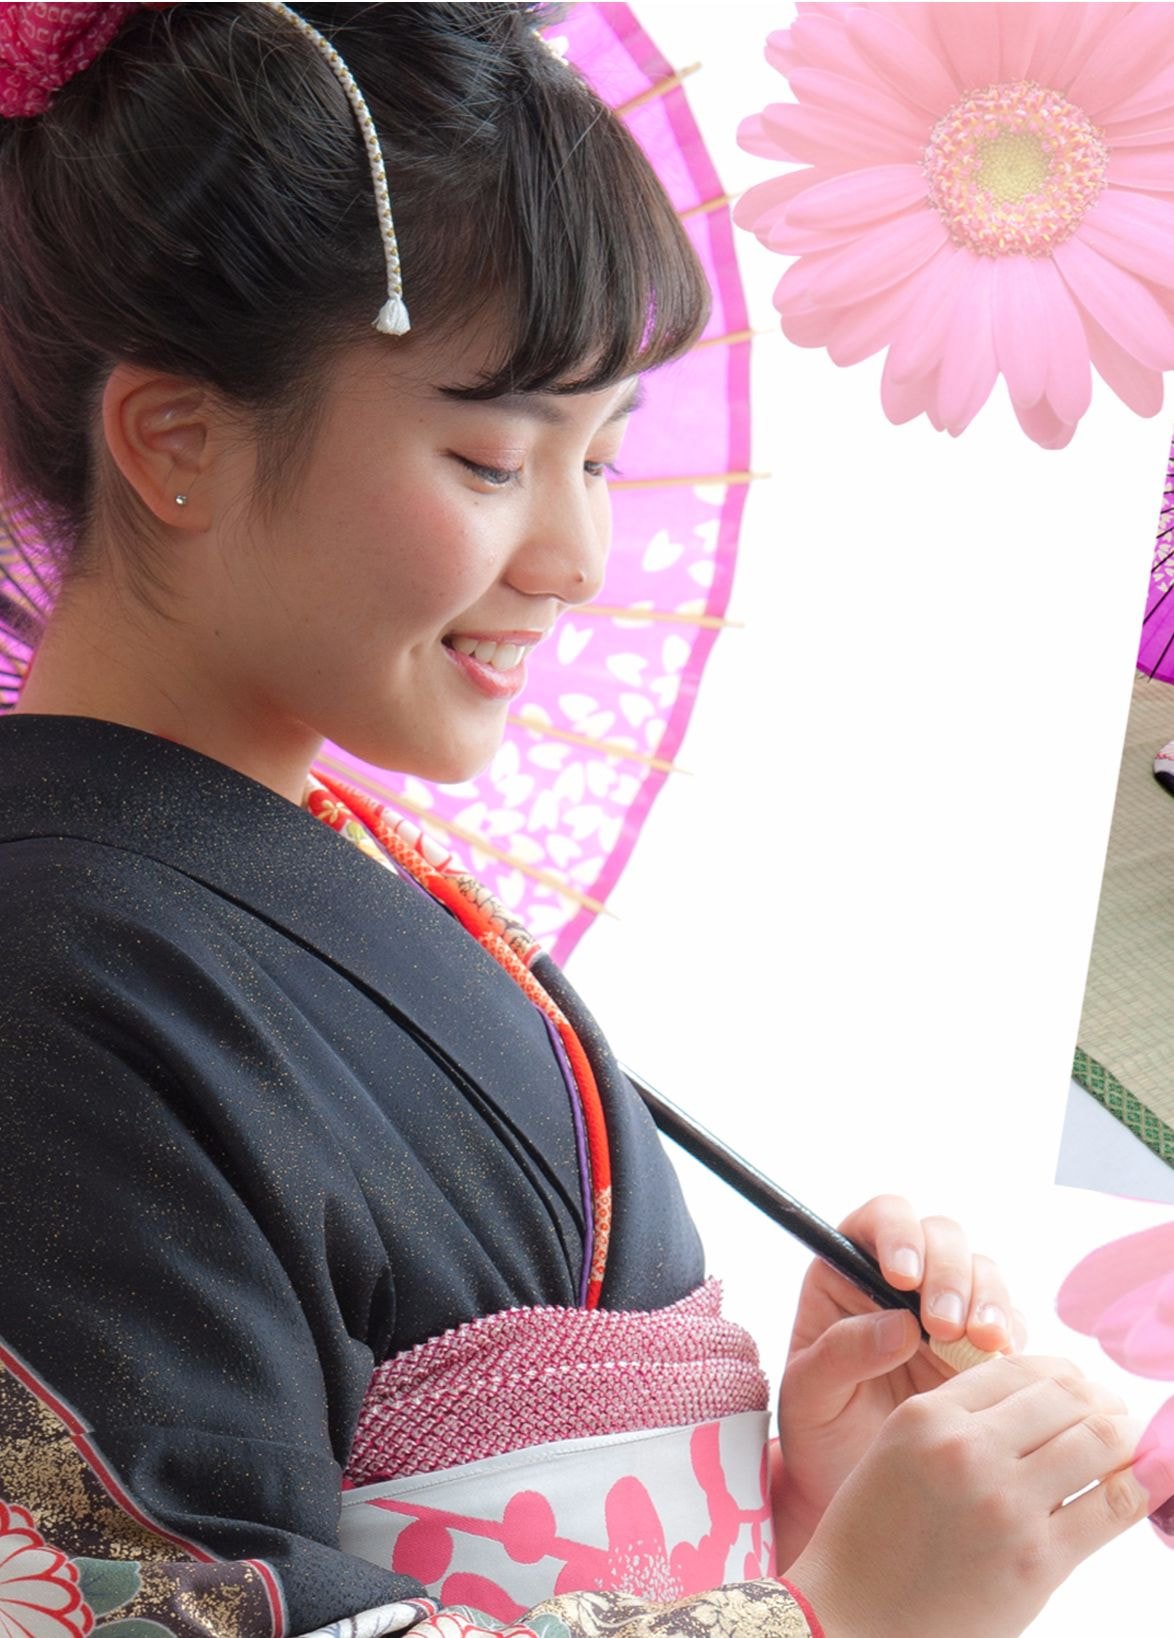 日本髪を結った振り袖女性の横顔の写真